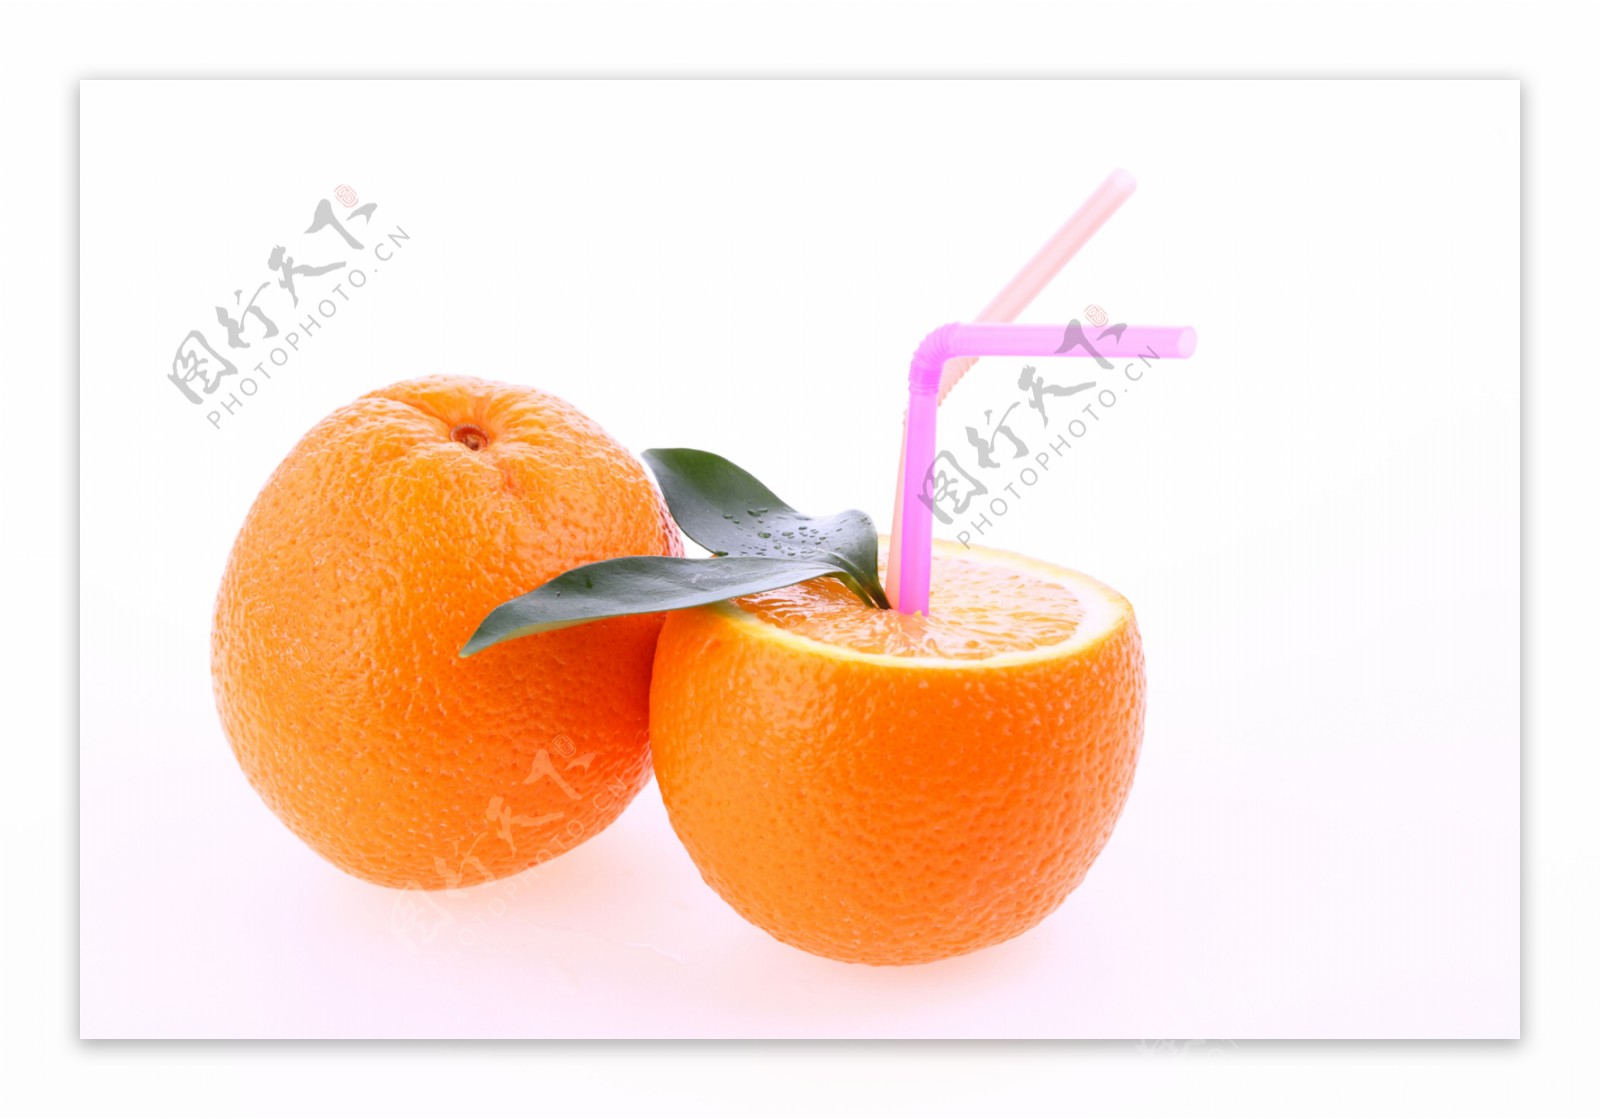 橙子果肉图片